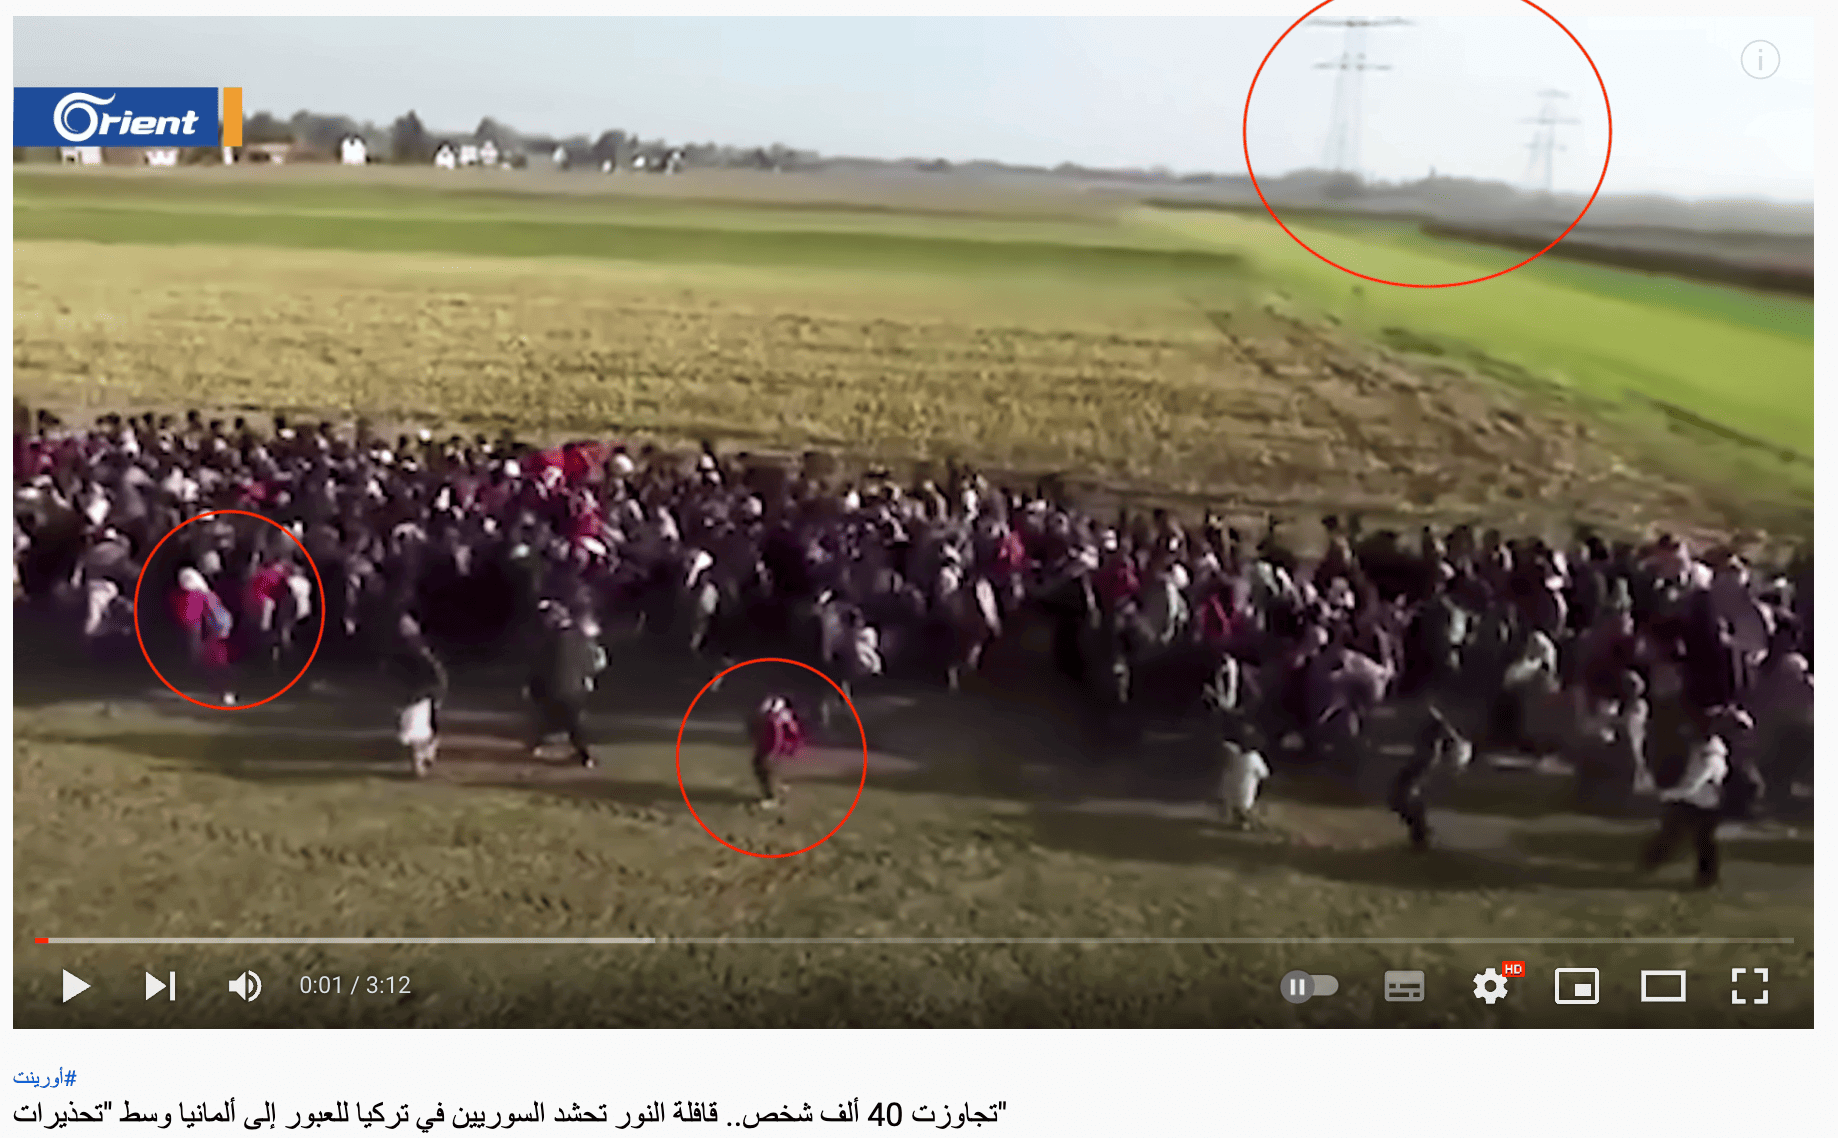 Arabisches Video von Orient TV zeigt viele Flüchtlinge auf einem Feld